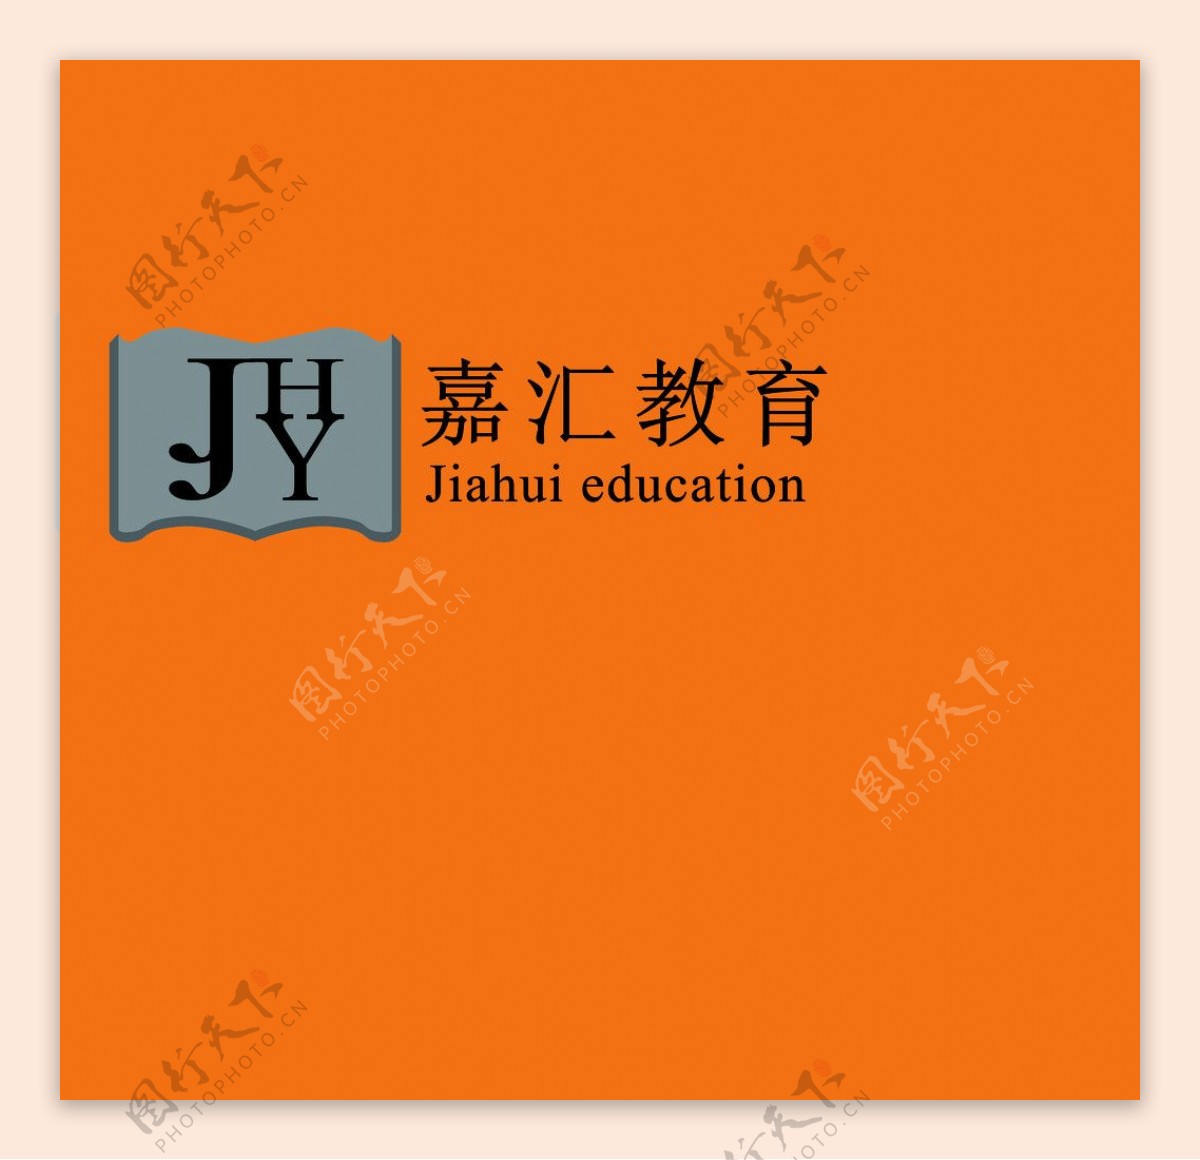 嘉汇教育logo图片